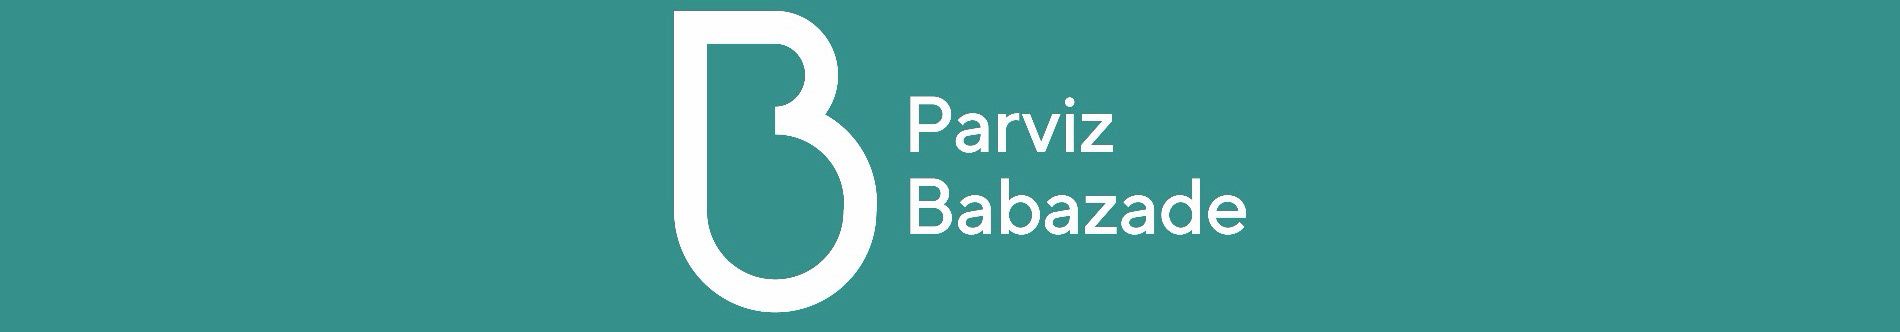 Parviz Babazade's profile banner